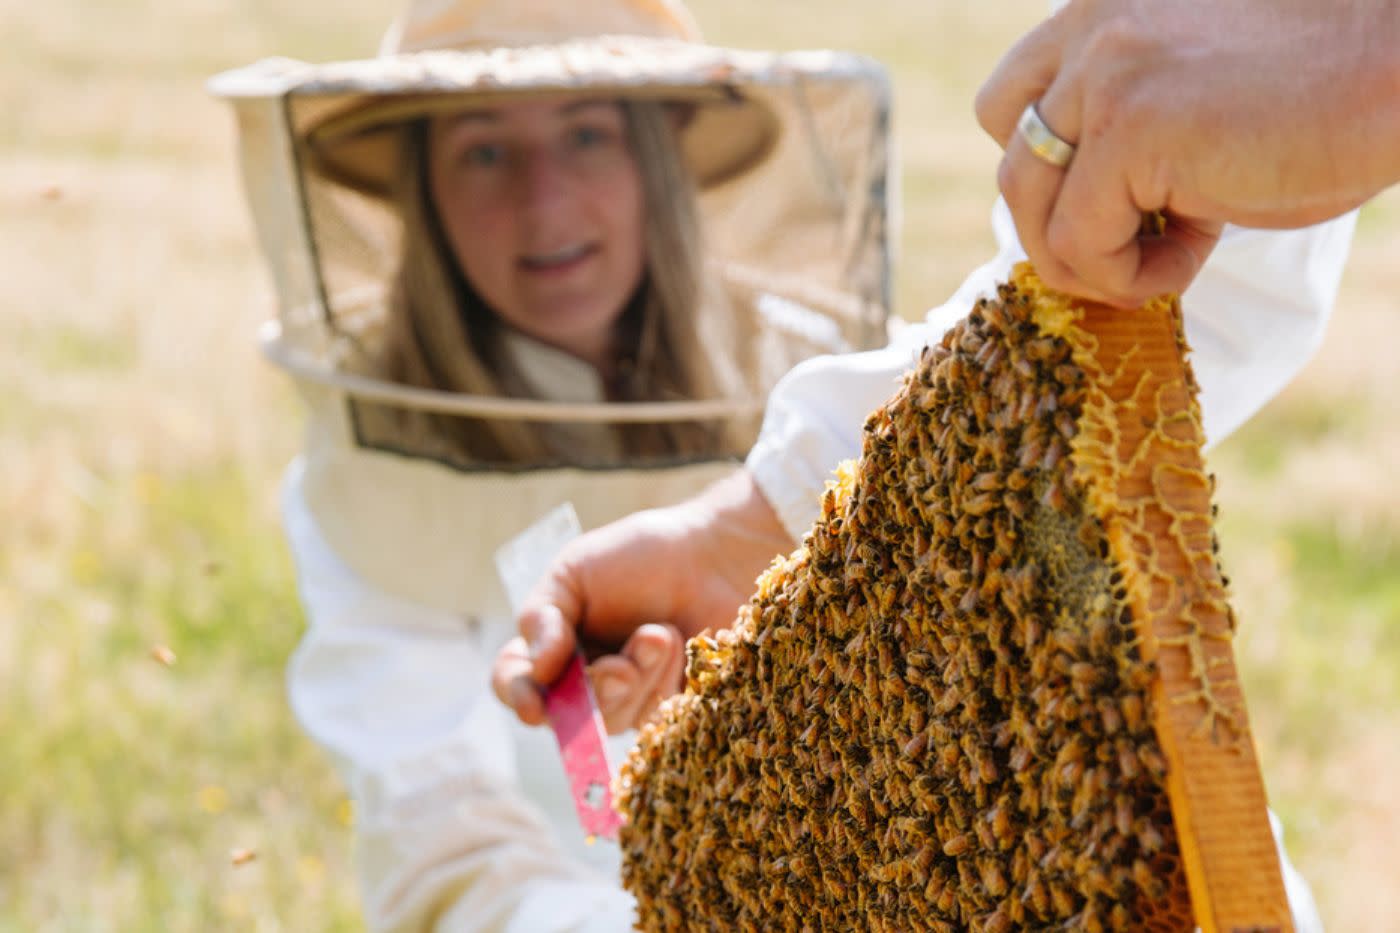 Women in bee-keeping equipment participates in a workshop at Buzzstop in Queenstown